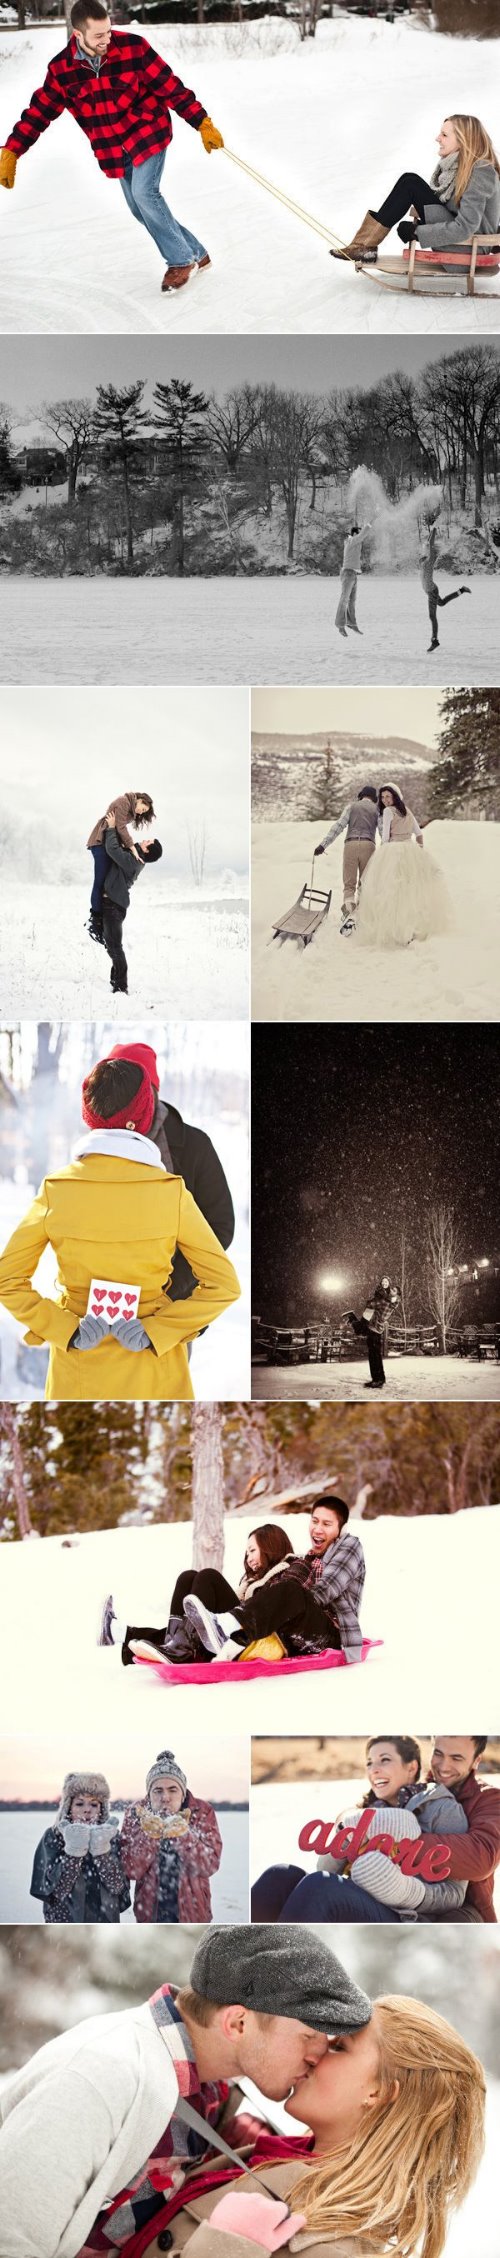 парень катает свою девушку на санках и другие идеи для зимней love story